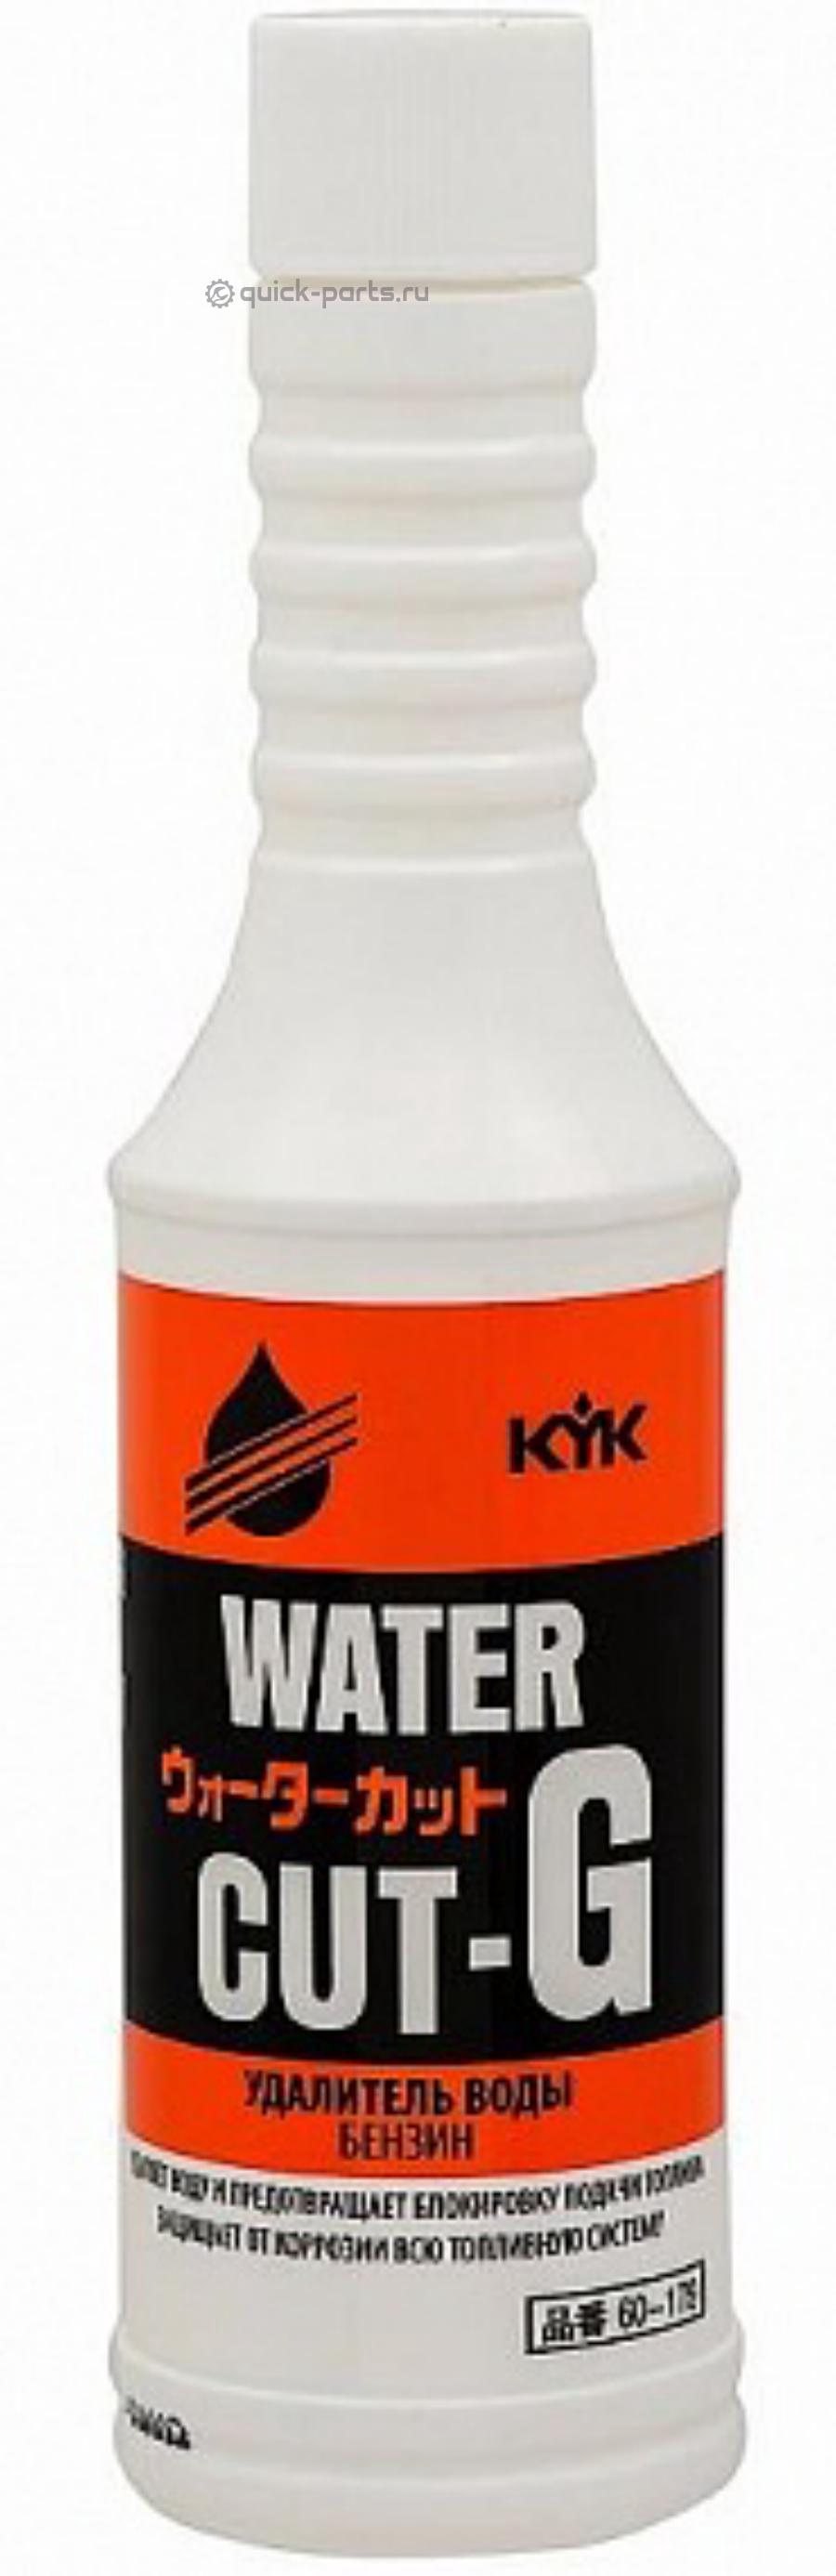 Присадка вытеснитель влаги из топлива KYK Water Cut-G